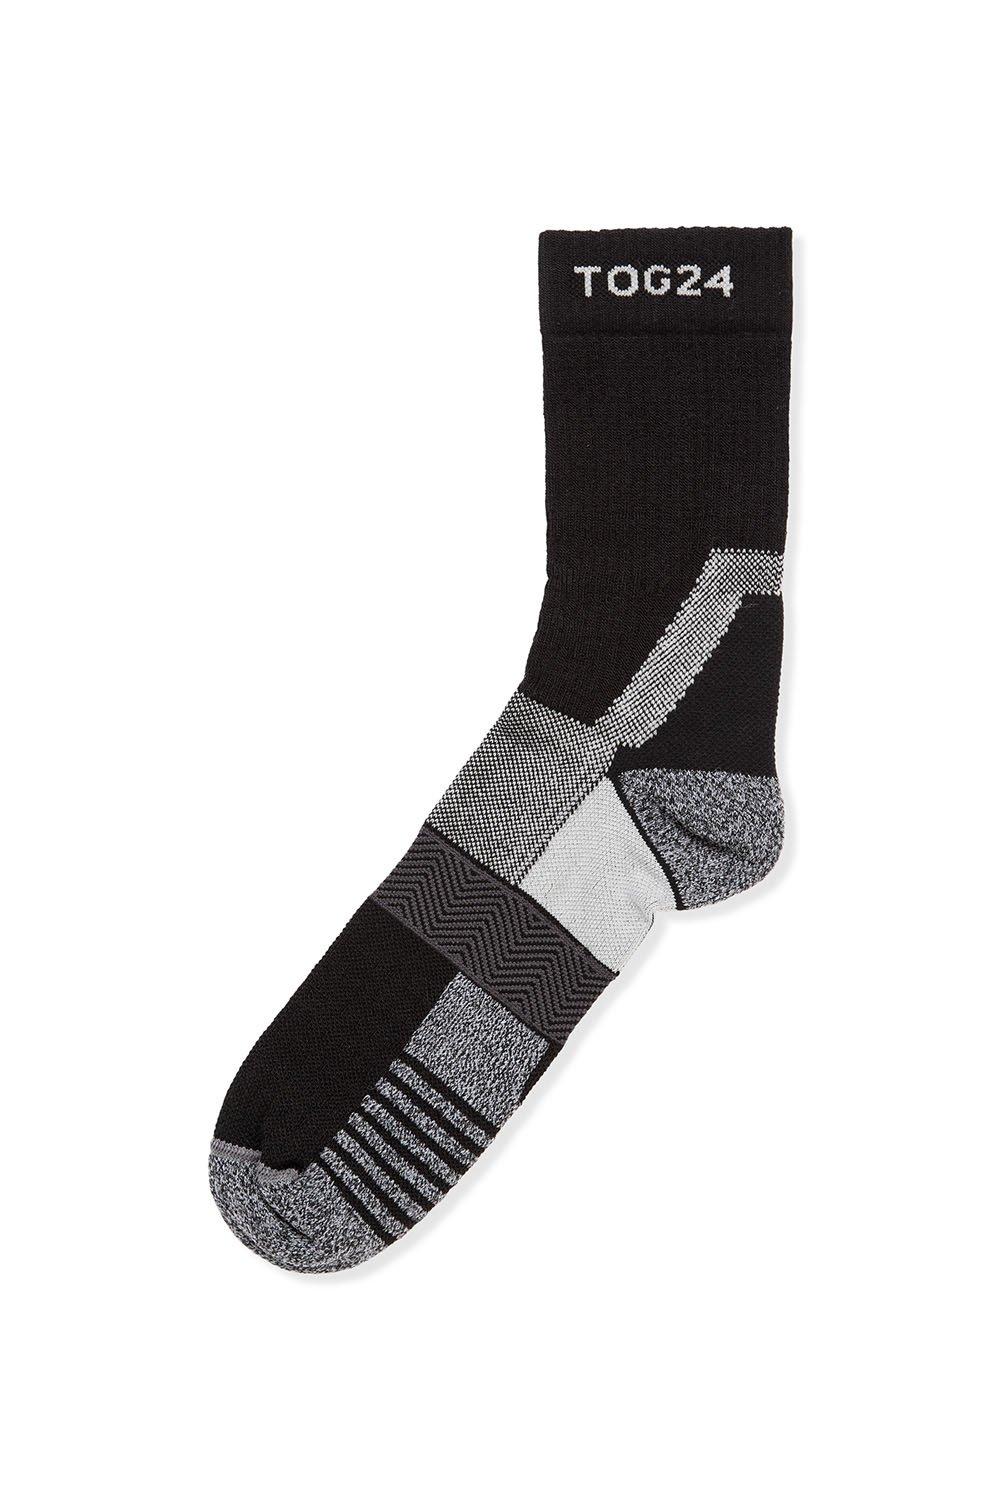 'Trek' Merino Socks